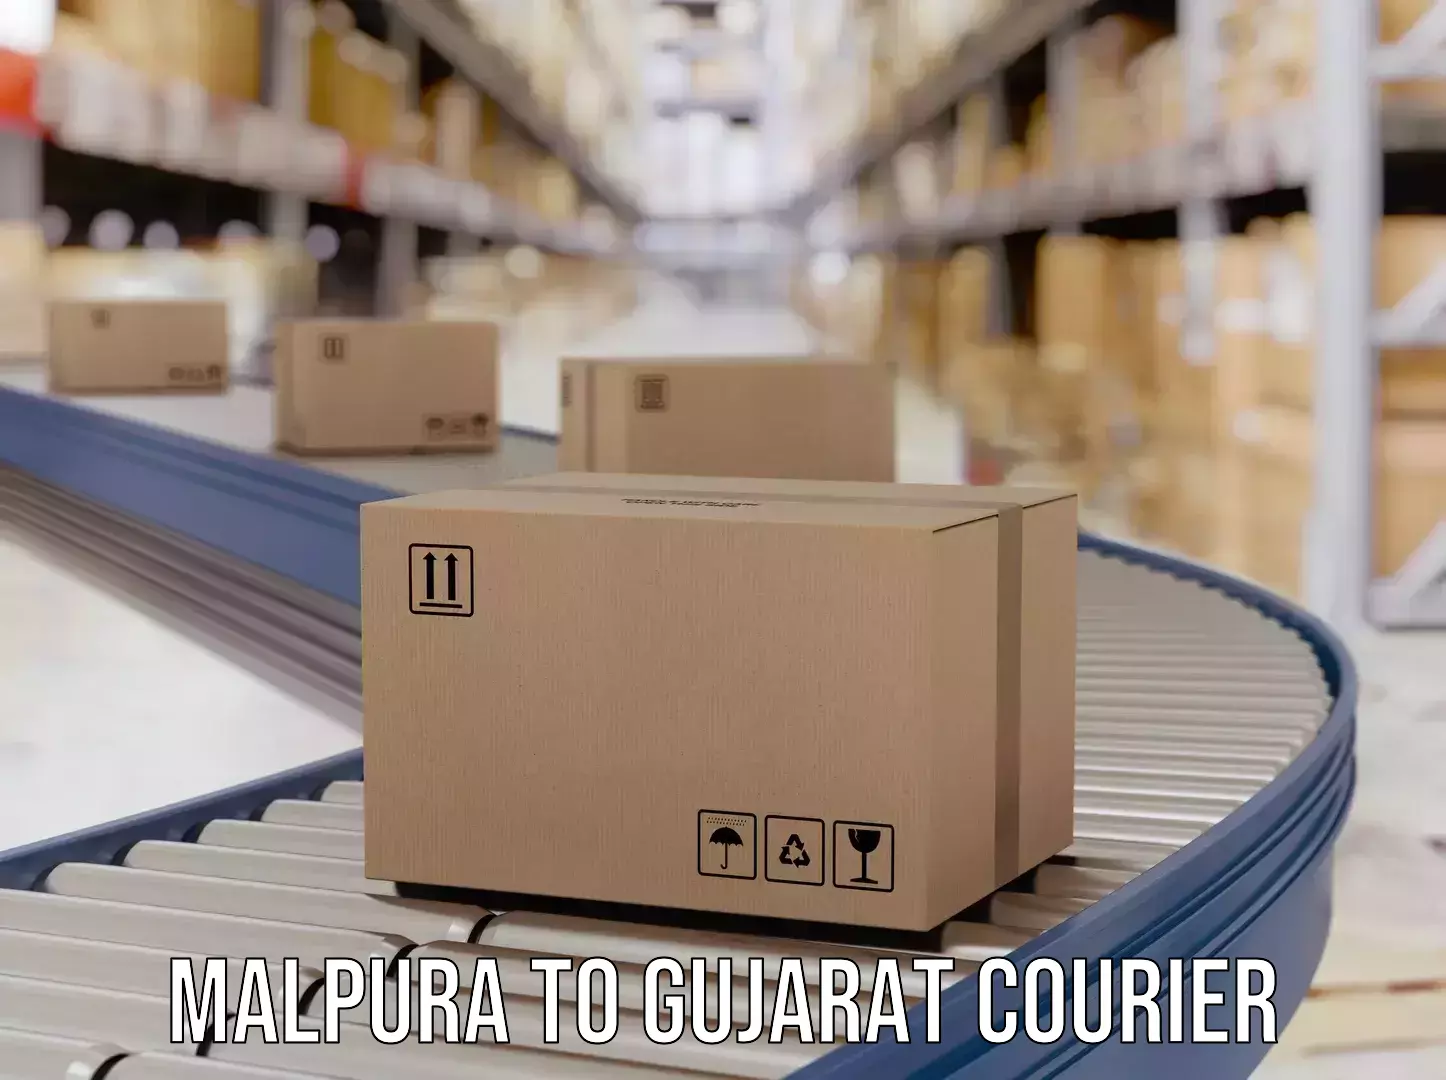 Online courier booking Malpura to Gandhinagar